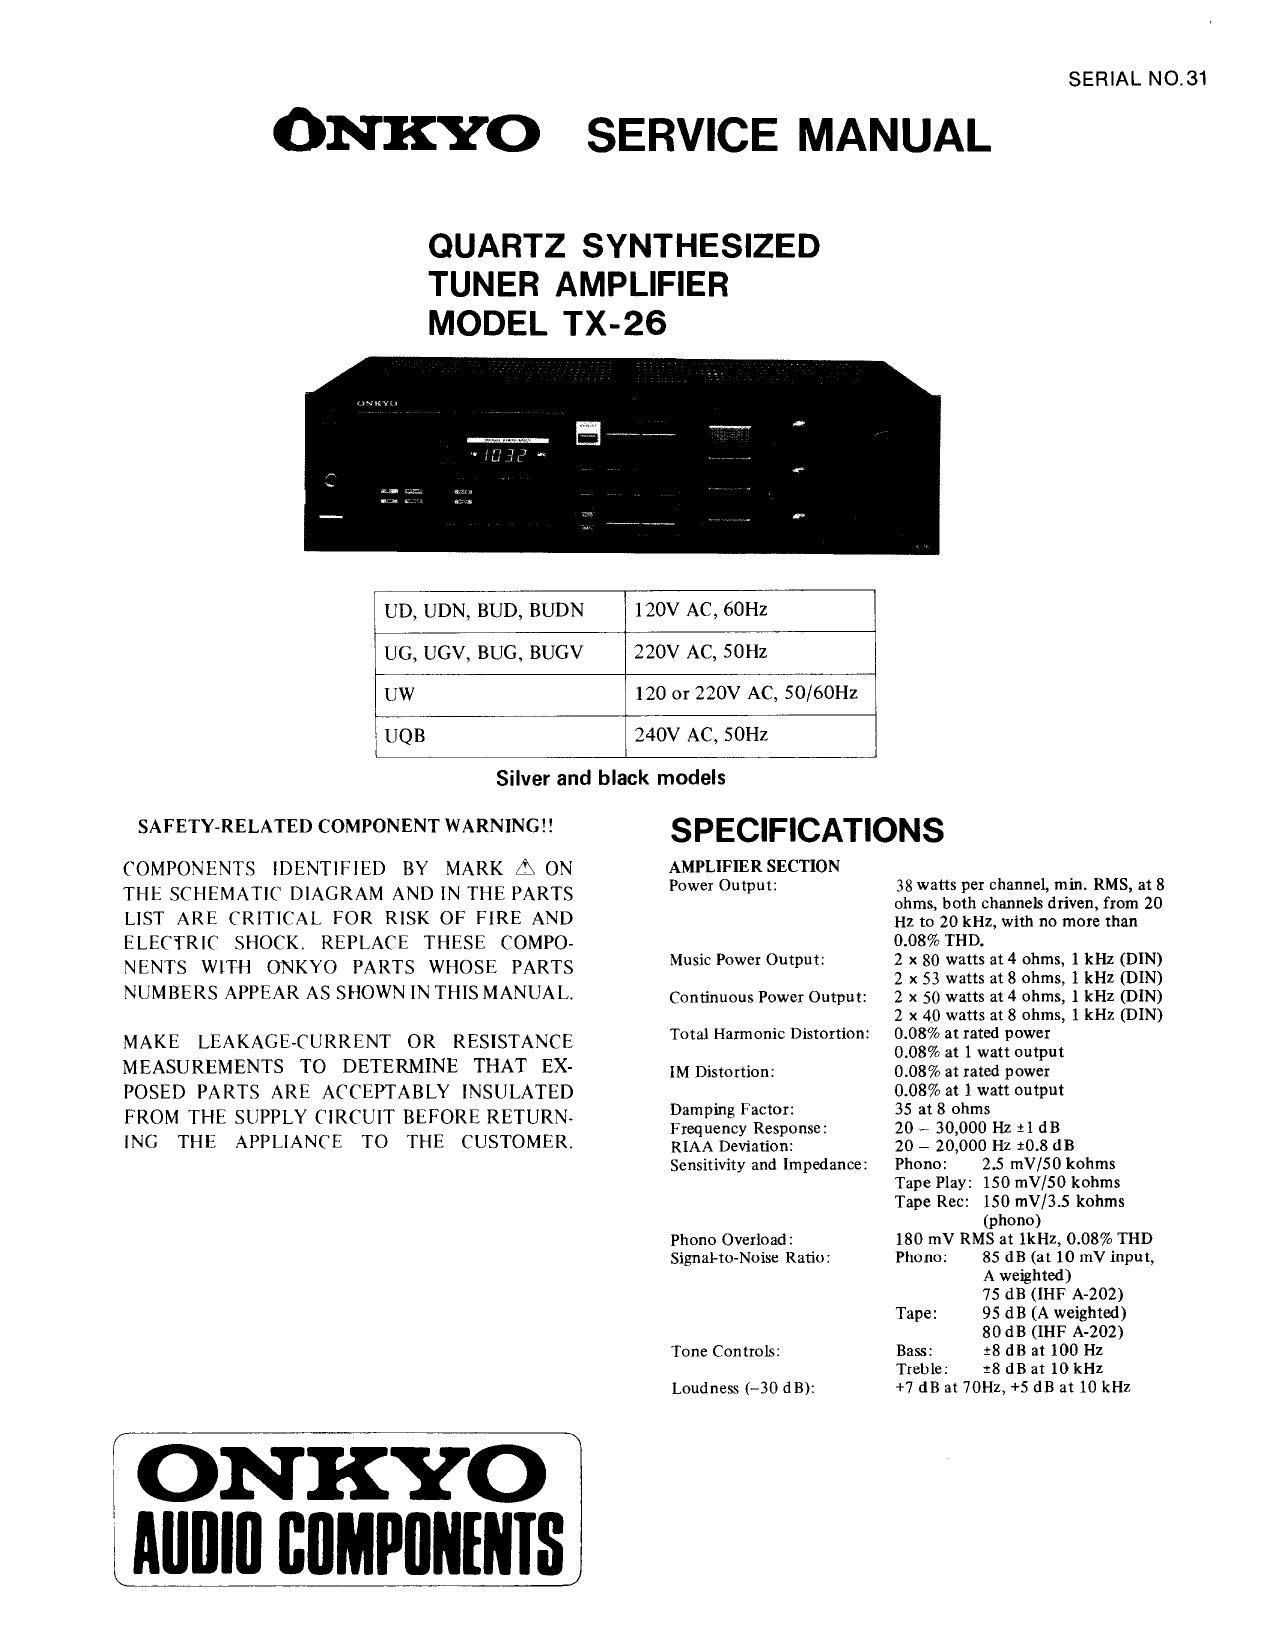 Onkyo TX 26 Service Manual